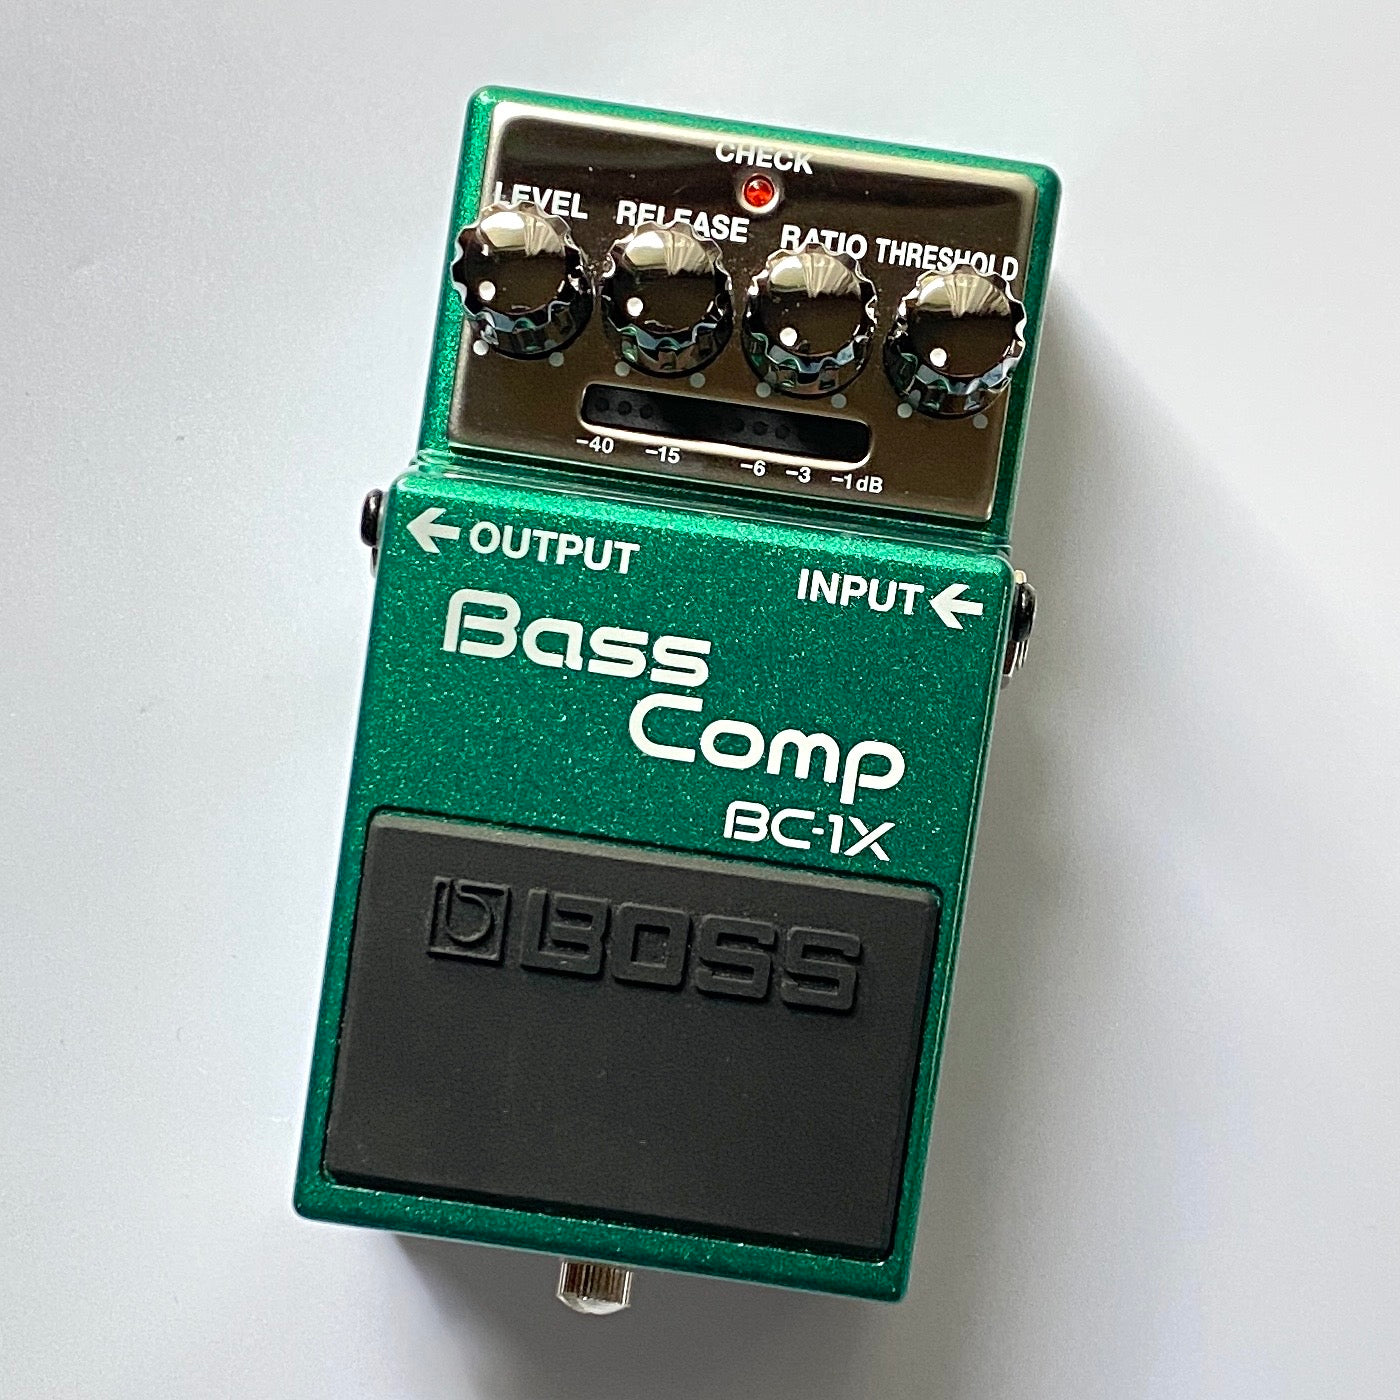 BC-1X Bass Comp